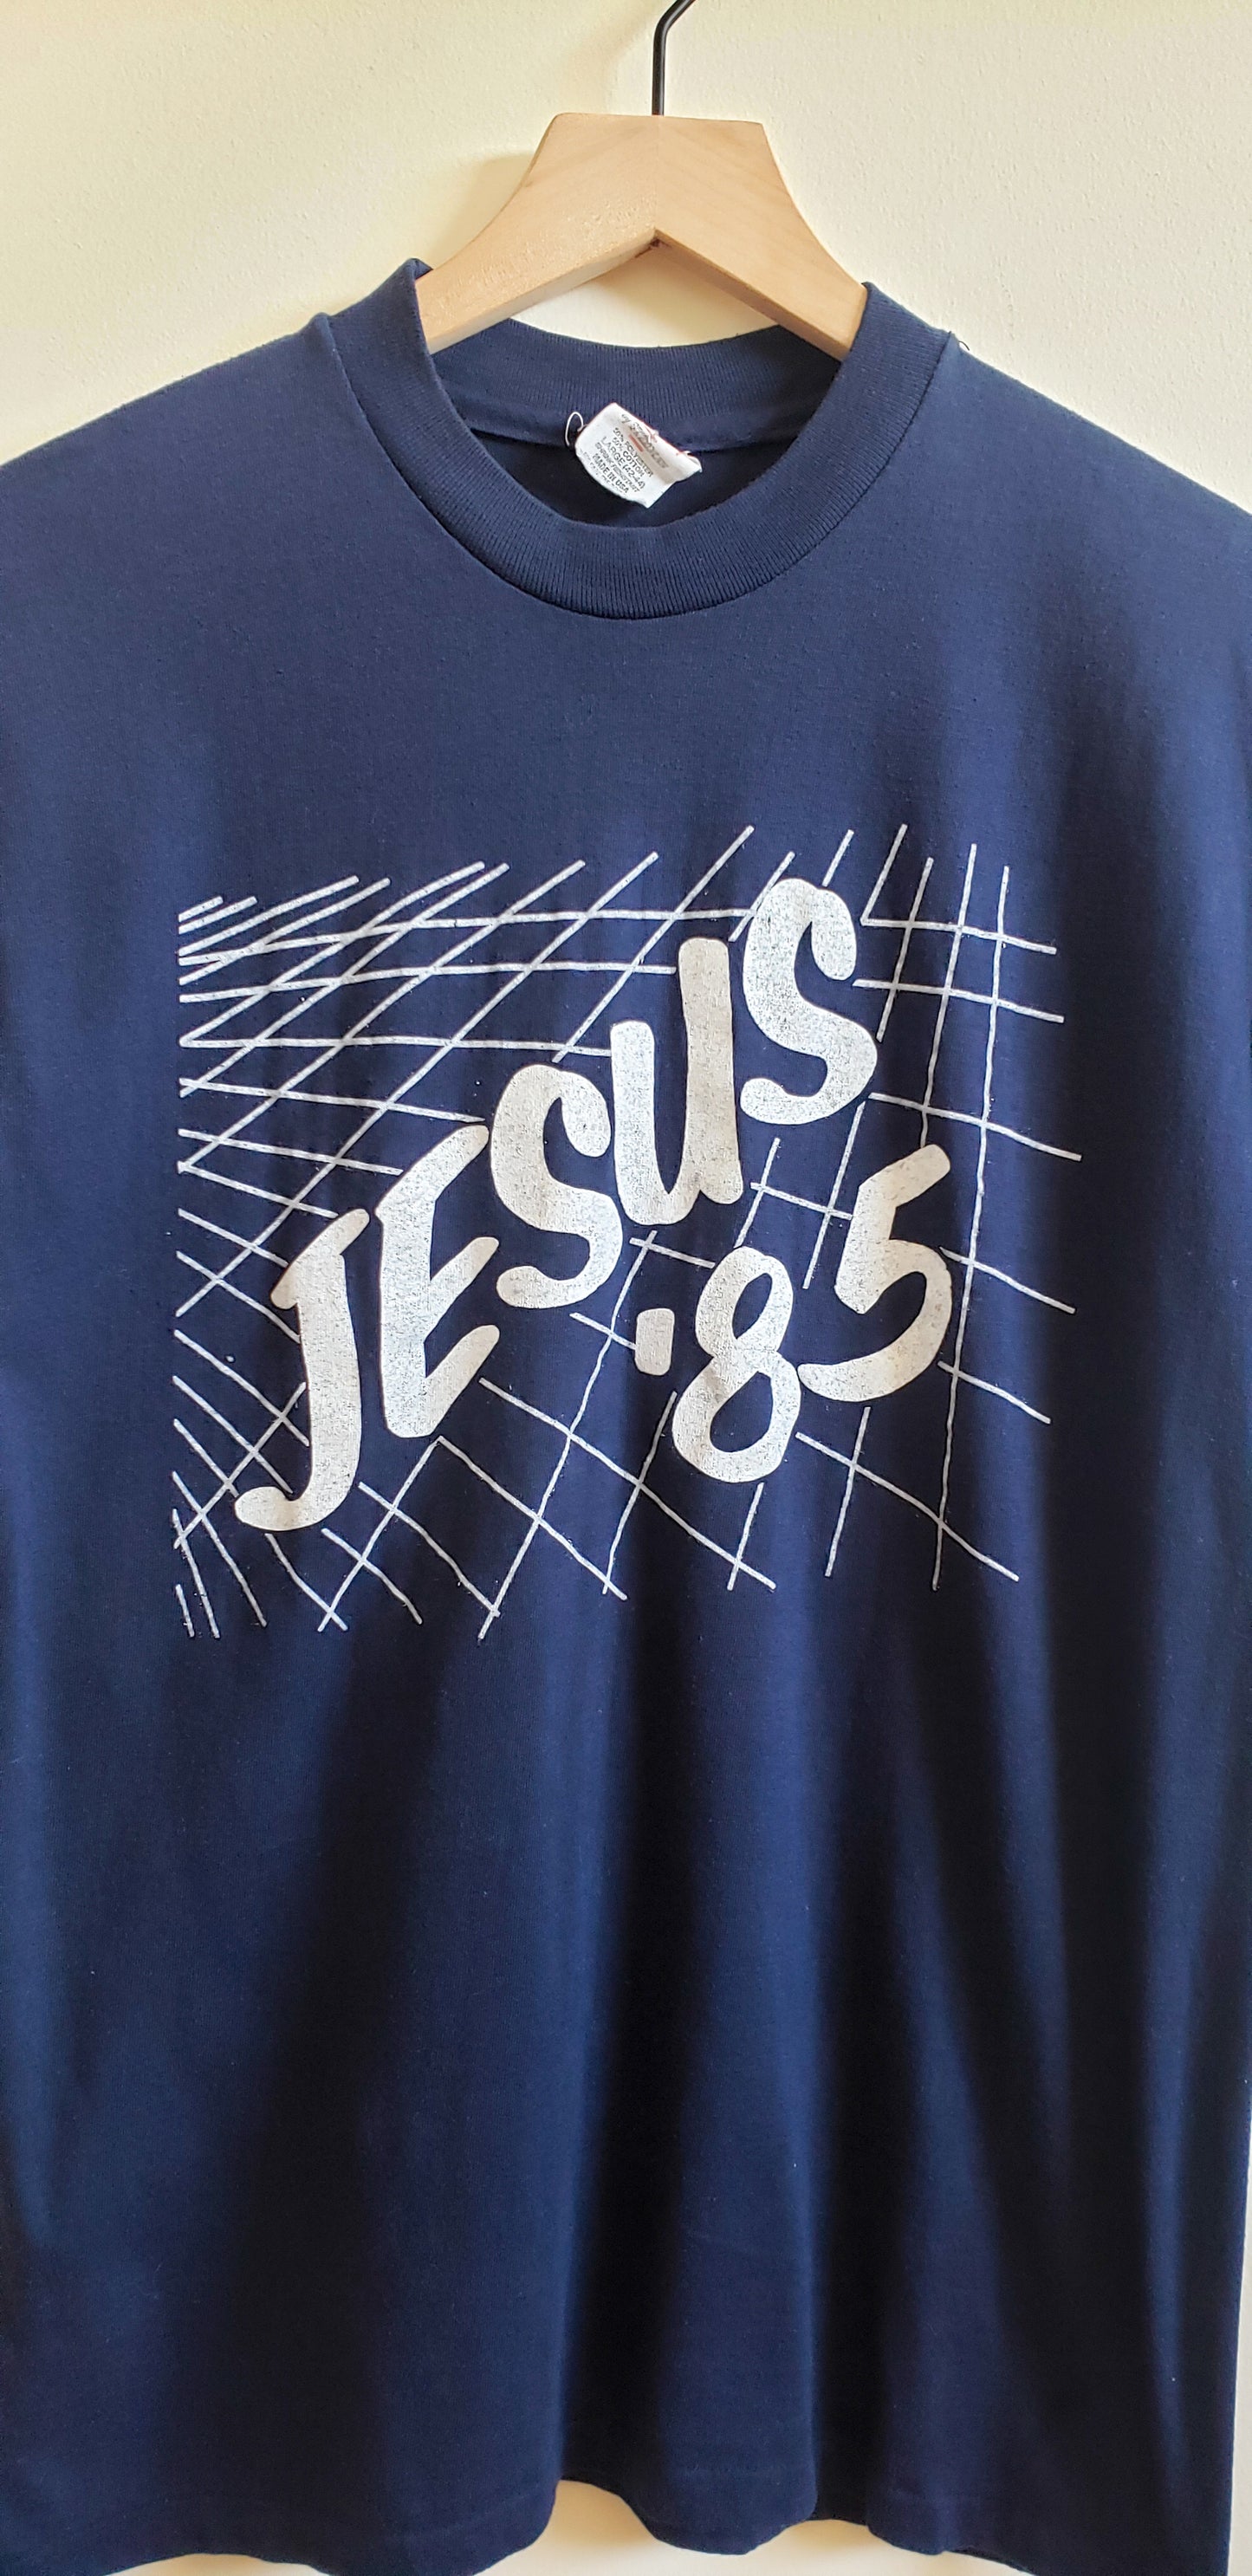 Jesus 85'